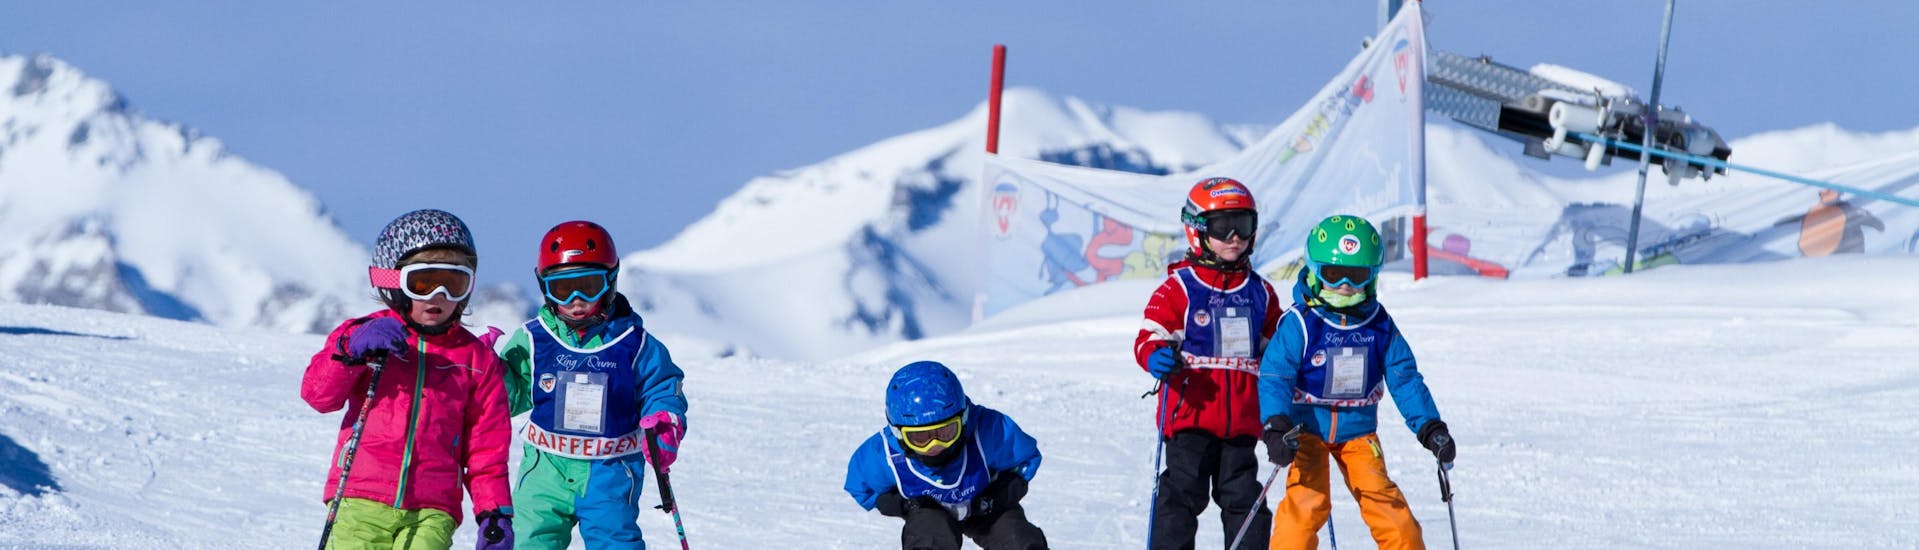 Lezioni di sci per bambini per principianti.